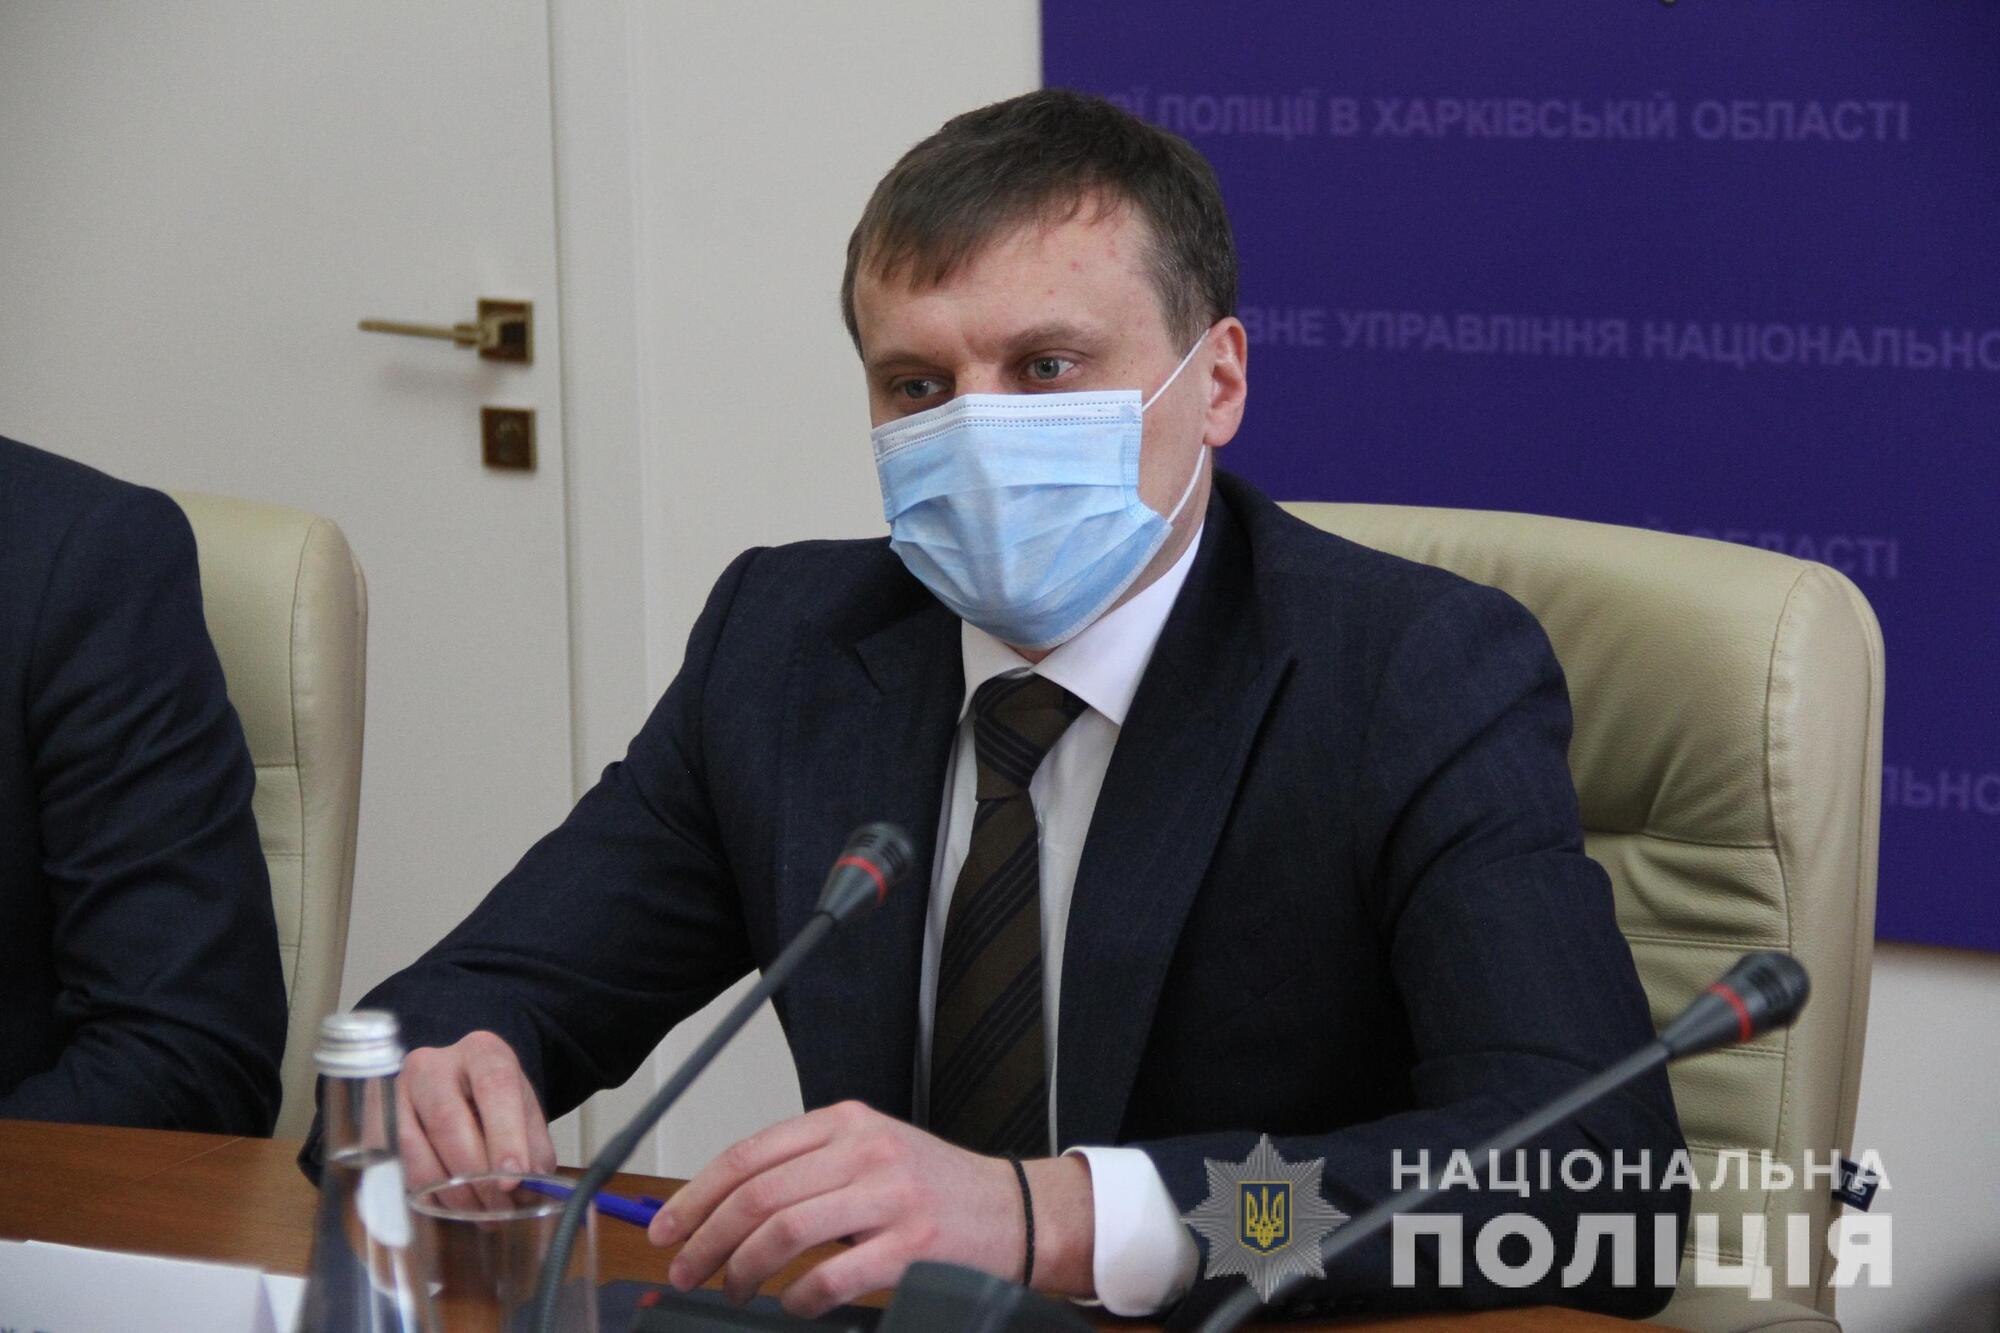 Харківська поліція продовжує вдосконалювати  проєкт «Custody records»